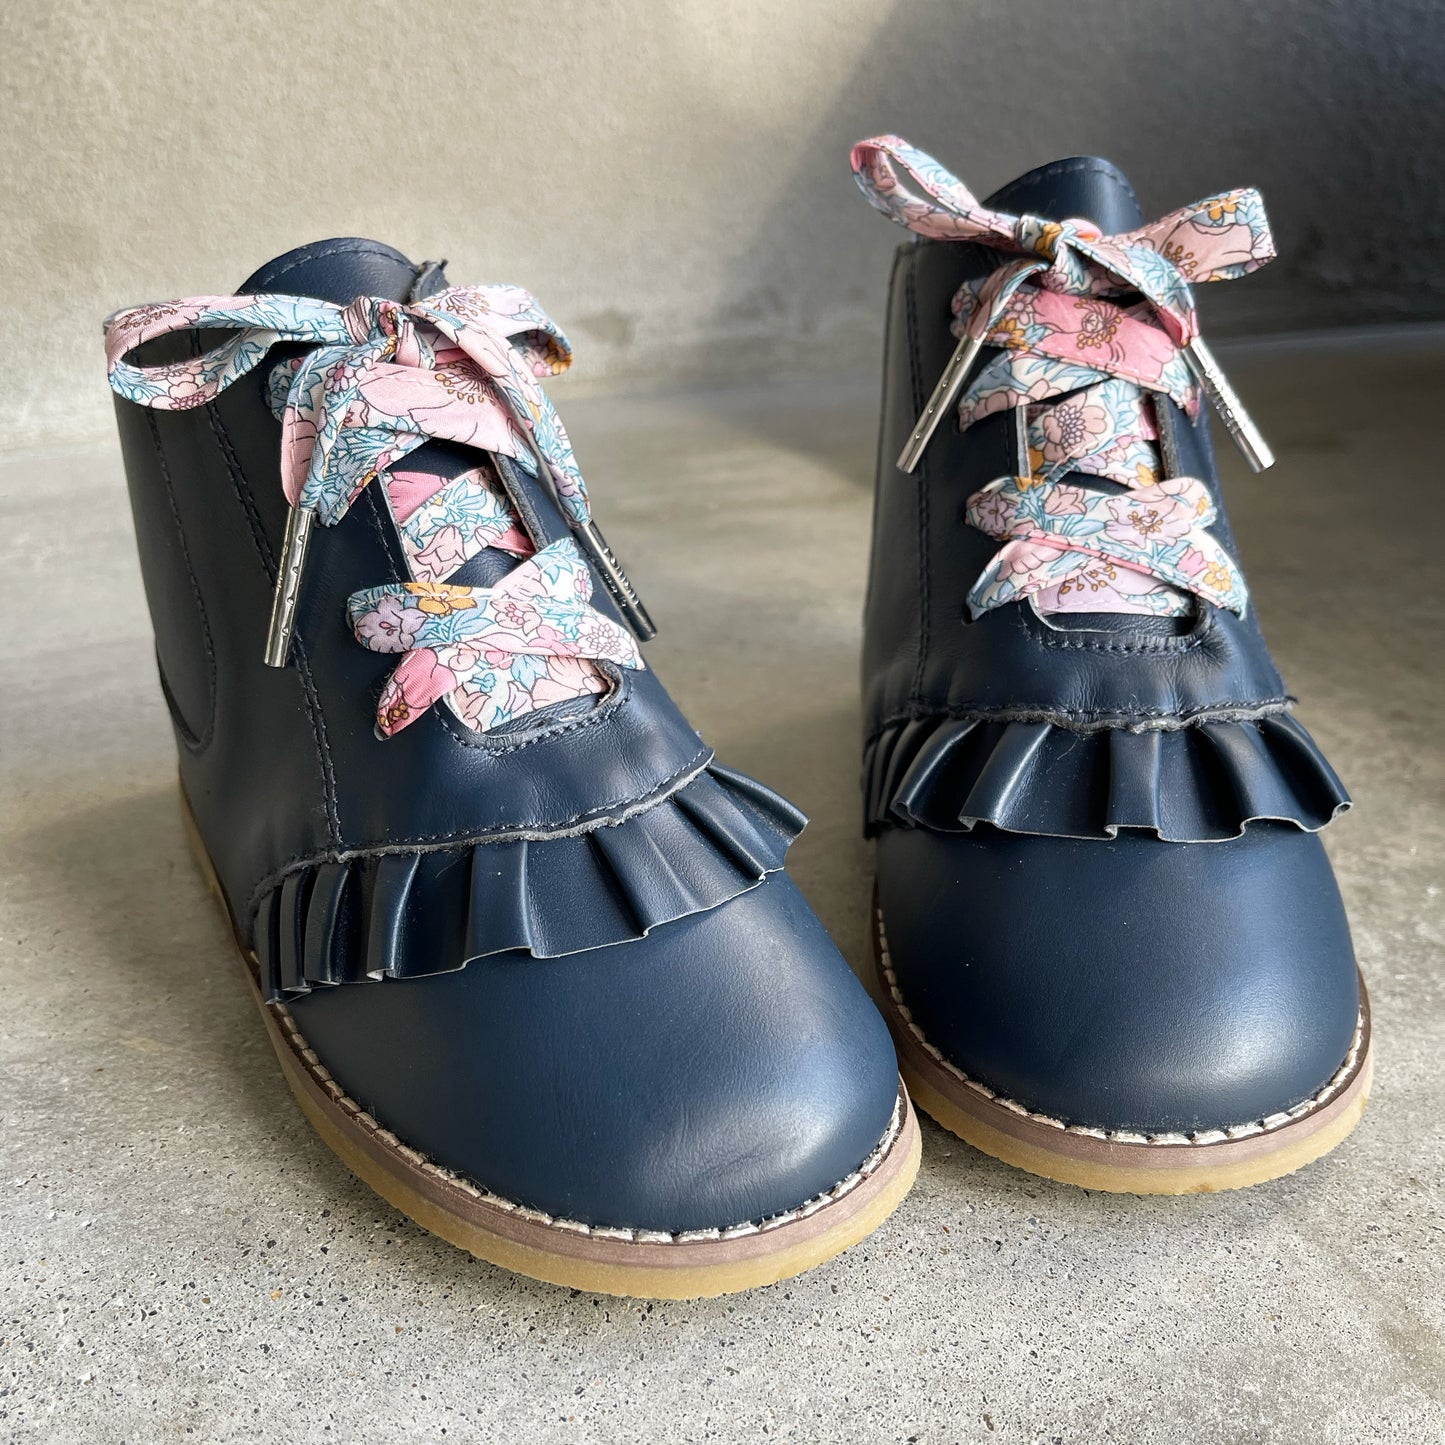 Toddler & Kids Boots - Alex in Navy